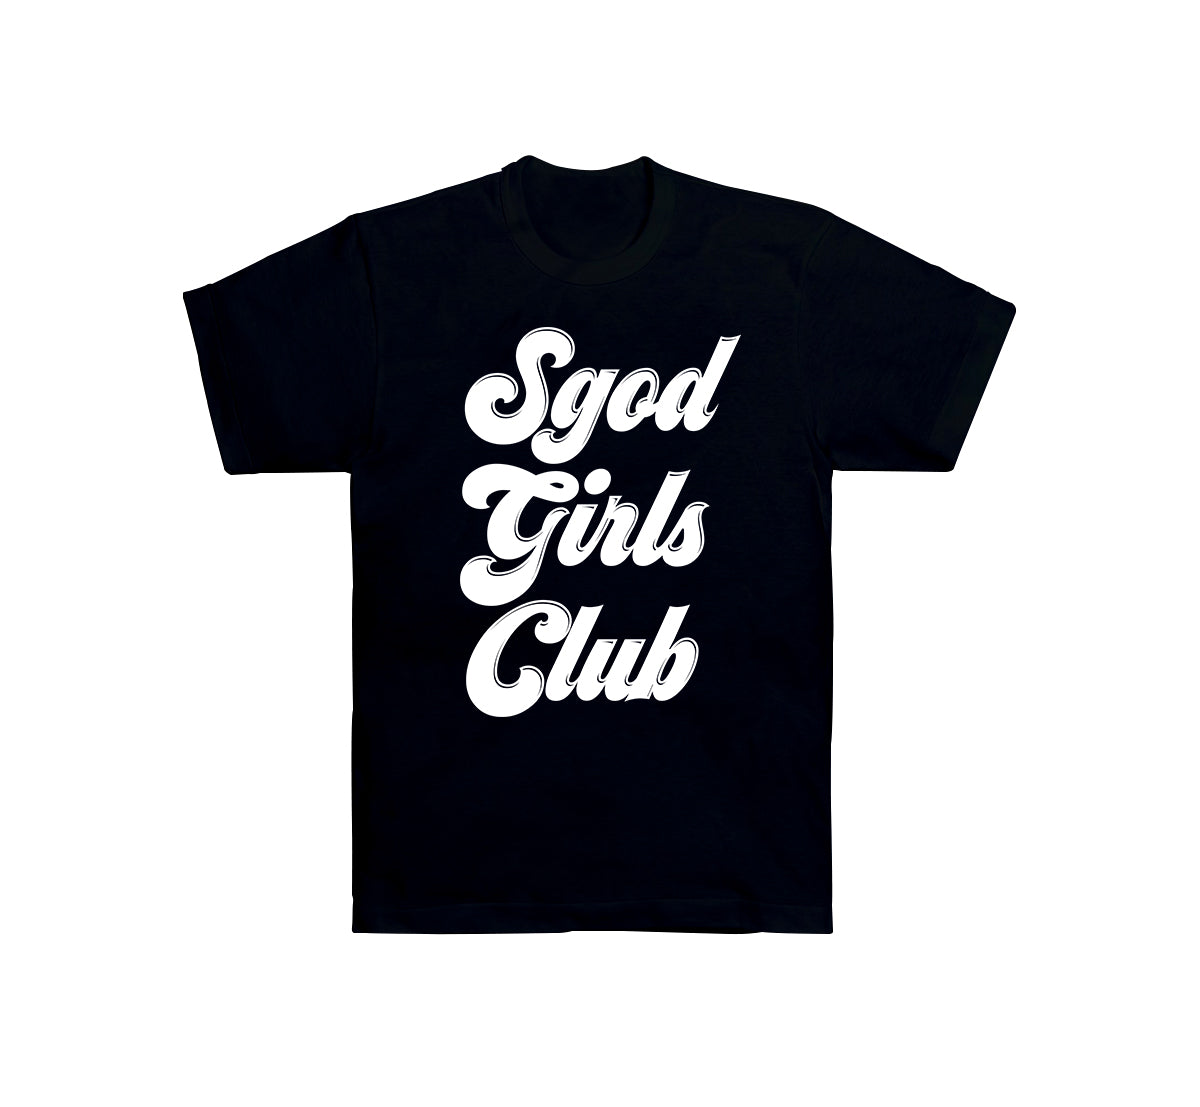 SGOD GIRLS CLUB LOGO T-SHIRTS